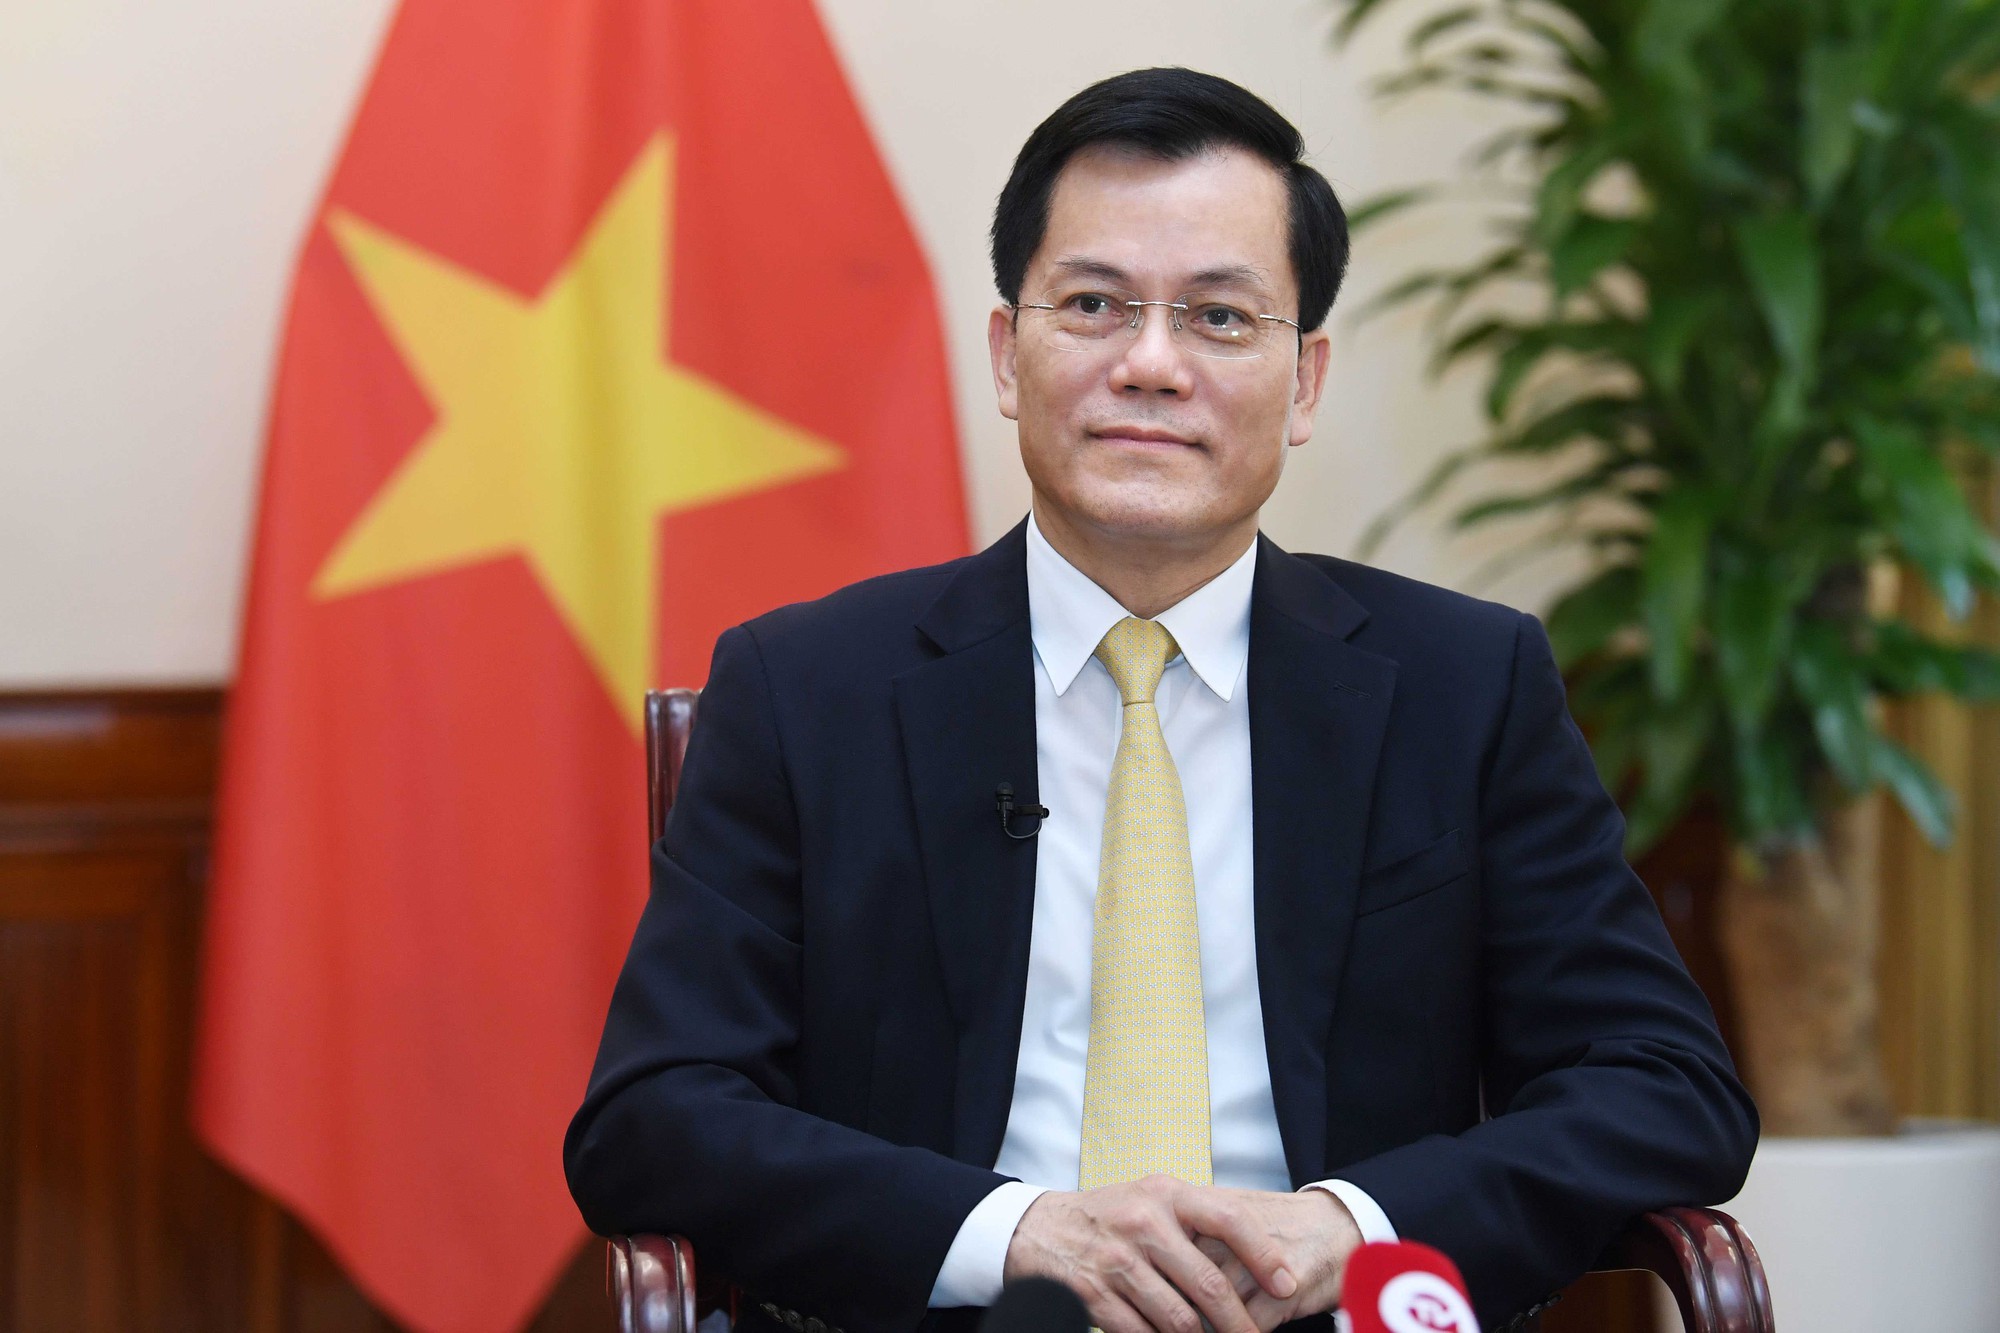 Lần đầu tiên một Tổng thống Hoa Kỳ thăm cấp Nhà nước theo lời mời của Tổng Bí thư Đảng Cộng sản Việt Nam - Ảnh 1.